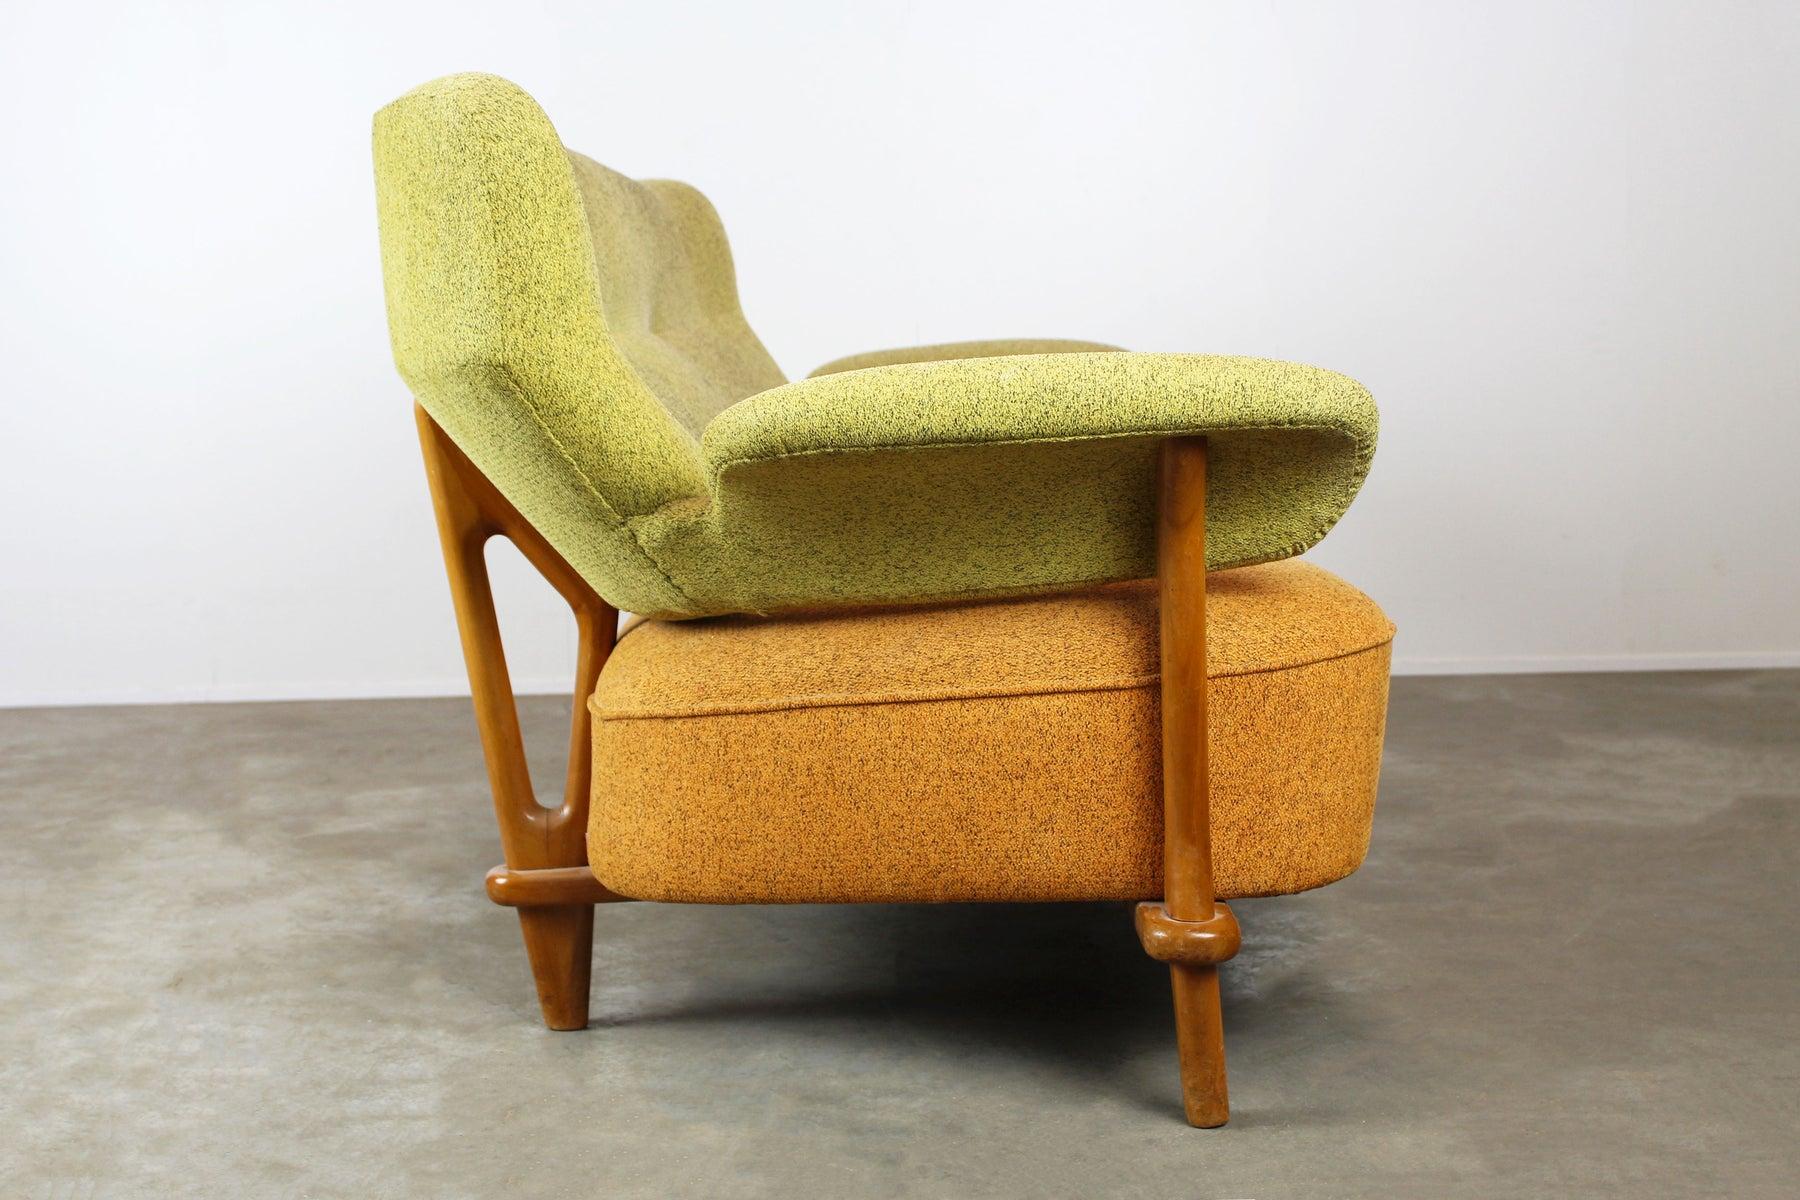 Sehr seltenes Sofamodell in modernem Design aus der Mitte des Jahrhunderts: F109 von Theo Ruth für Artifort, 1950. Hochwertiges niederländisches Design. Das Sofa ist sehr bequem und zeigt die berühmten organischen Linien von Theo Ruth. Der